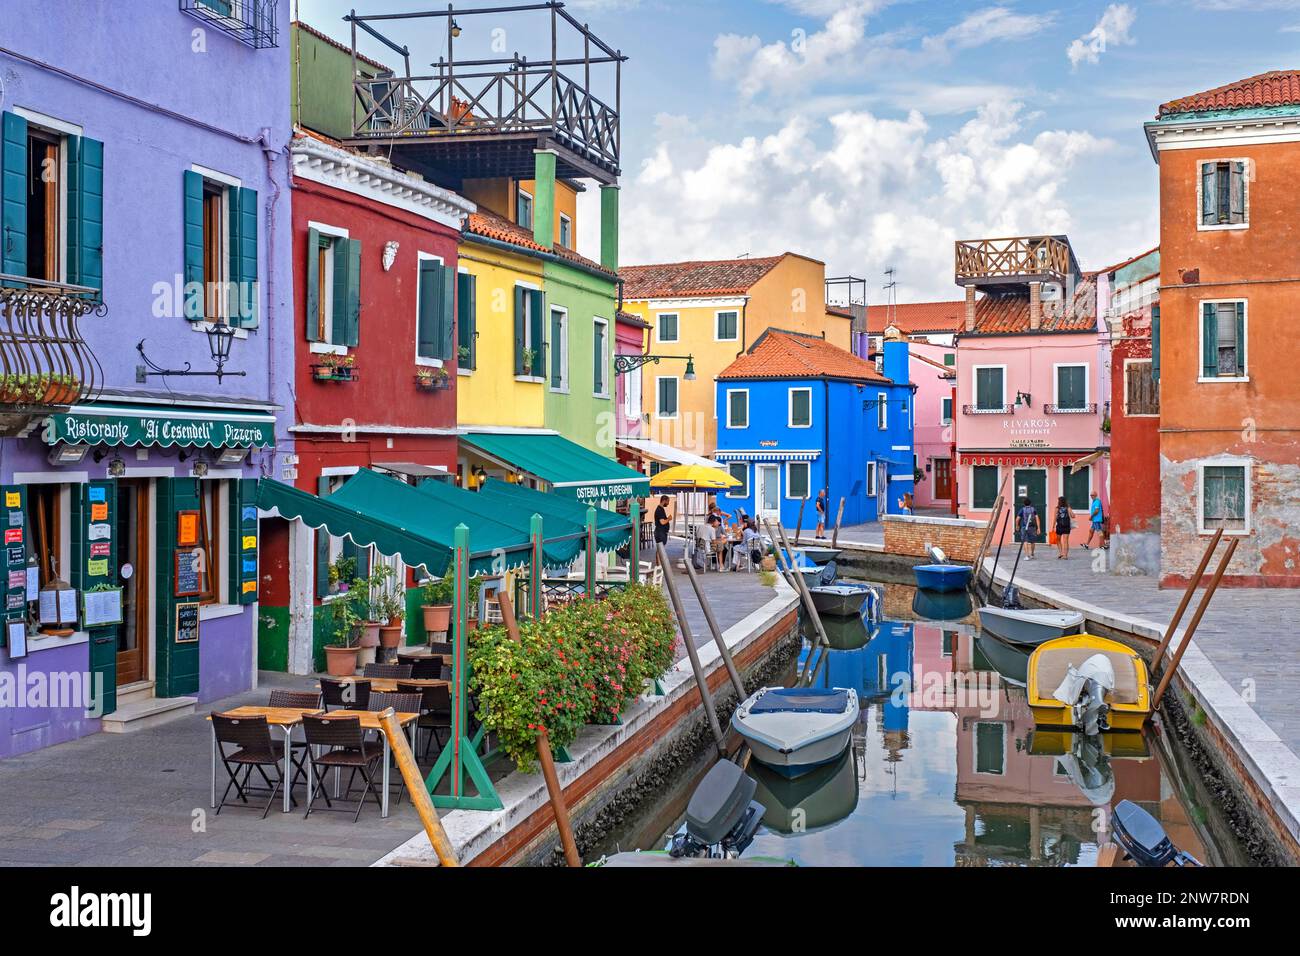 Ristoranti colorati e case dai colori vivaci lungo il canale di Burano, isola nella laguna veneta vicino a Venezia, Veneto, Italia settentrionale Foto Stock